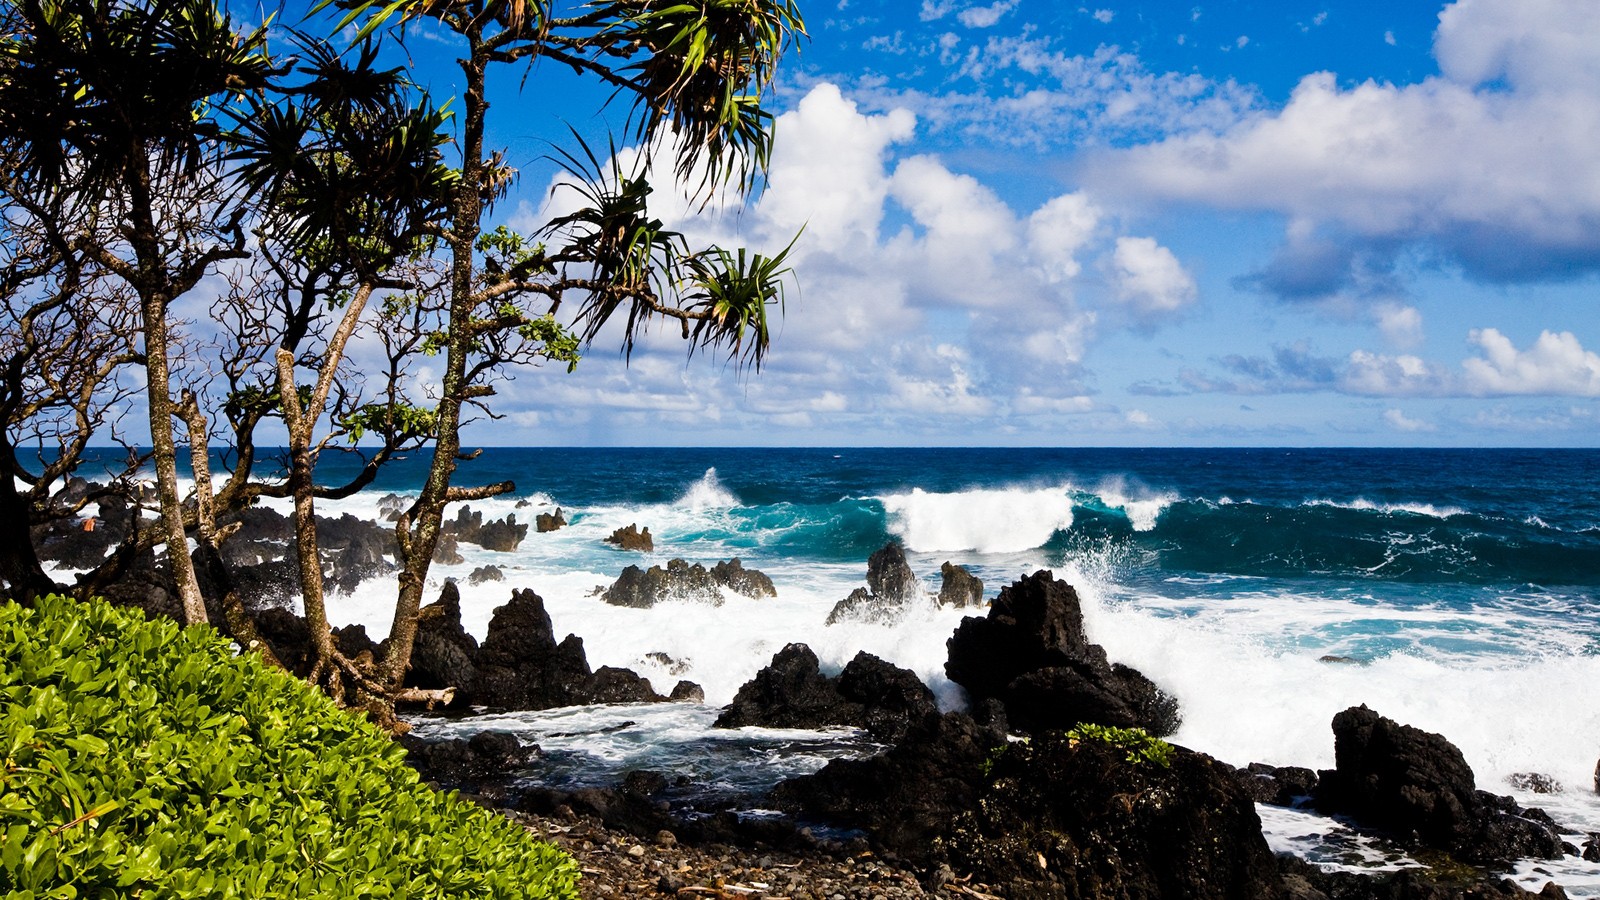 Travel + Leisure's 10 best islands of 2015 CNN Travel